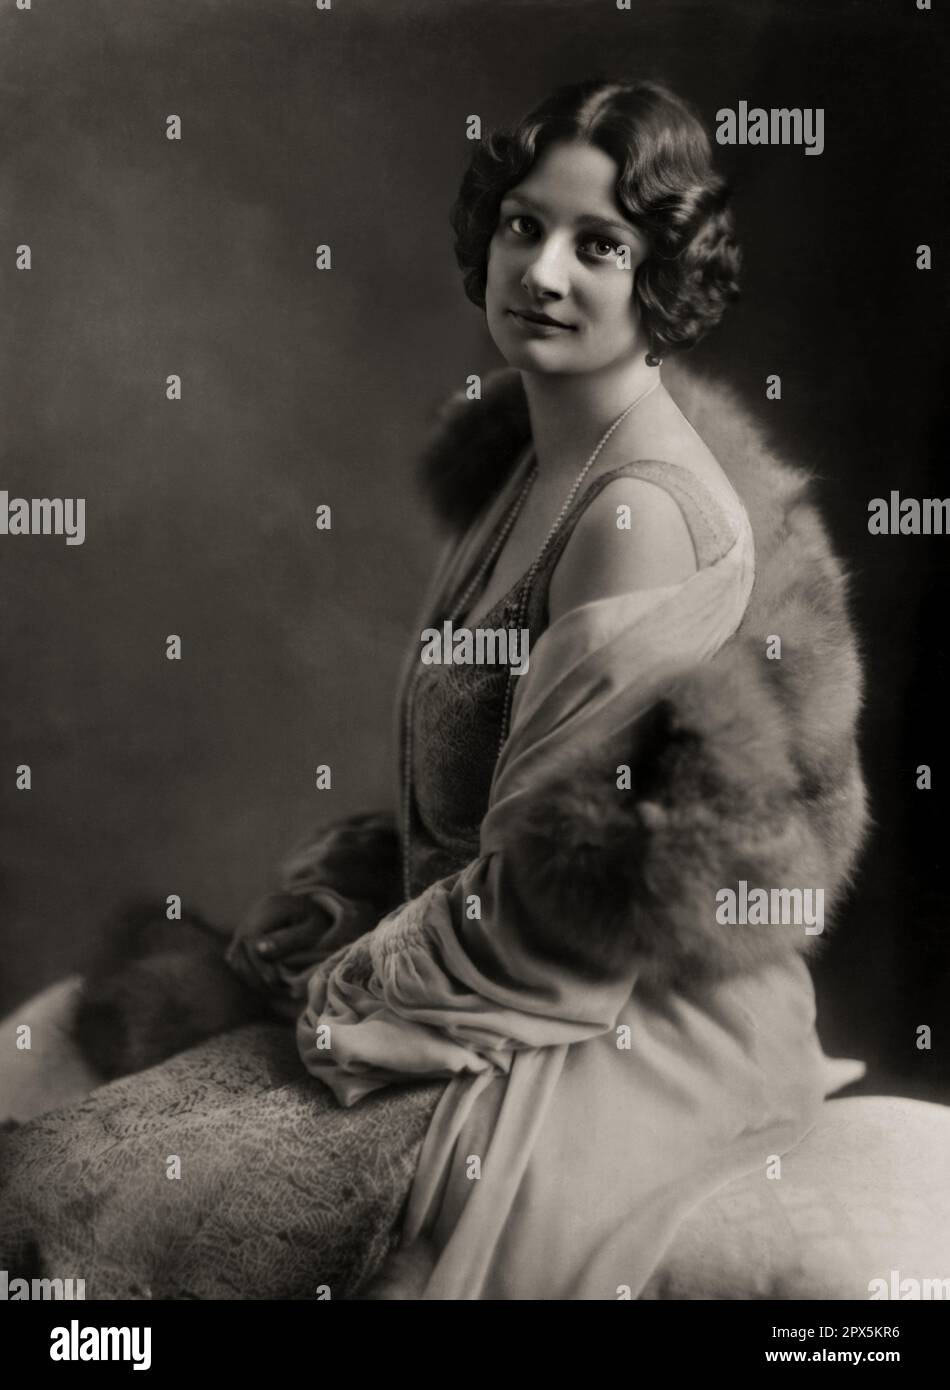 1930 , décembre , BELGIQUE : Reine ASTRID de BELGIQUE ( née princesse de Suède , 1905 - 1935 ). Photo de EVA BARRETT ( 1879 - 1949 ), Roma , Italie . - Maison du BRABANT - BRABANTE - REGINA - royauté belge - nobili - nobiltà - principessa reale - BELGIO - portrait - SVEZIA - HISTOIRE - FOTO STORICHE - MODE - MODA FEMMINILE - fourrure - pelliccia - collier - collana - Collo - cou - ANNI TRENTA - 30's - '30 --- Archivio GBB Banque D'Images